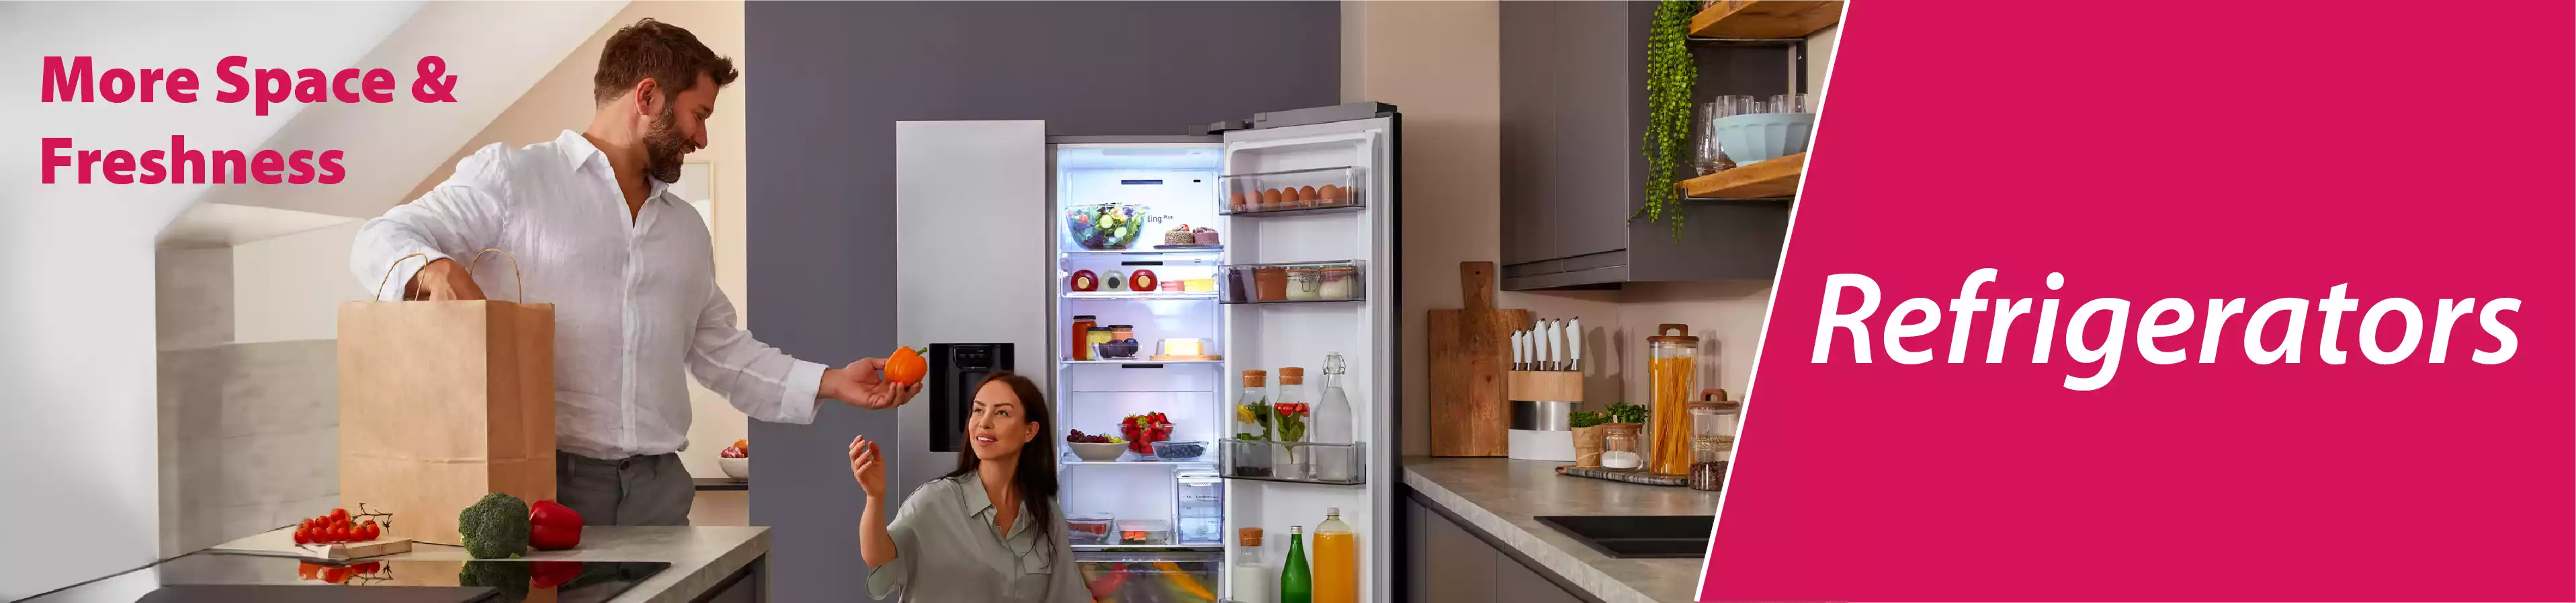 Refrigerator, Air Conditioner, Washing Machines